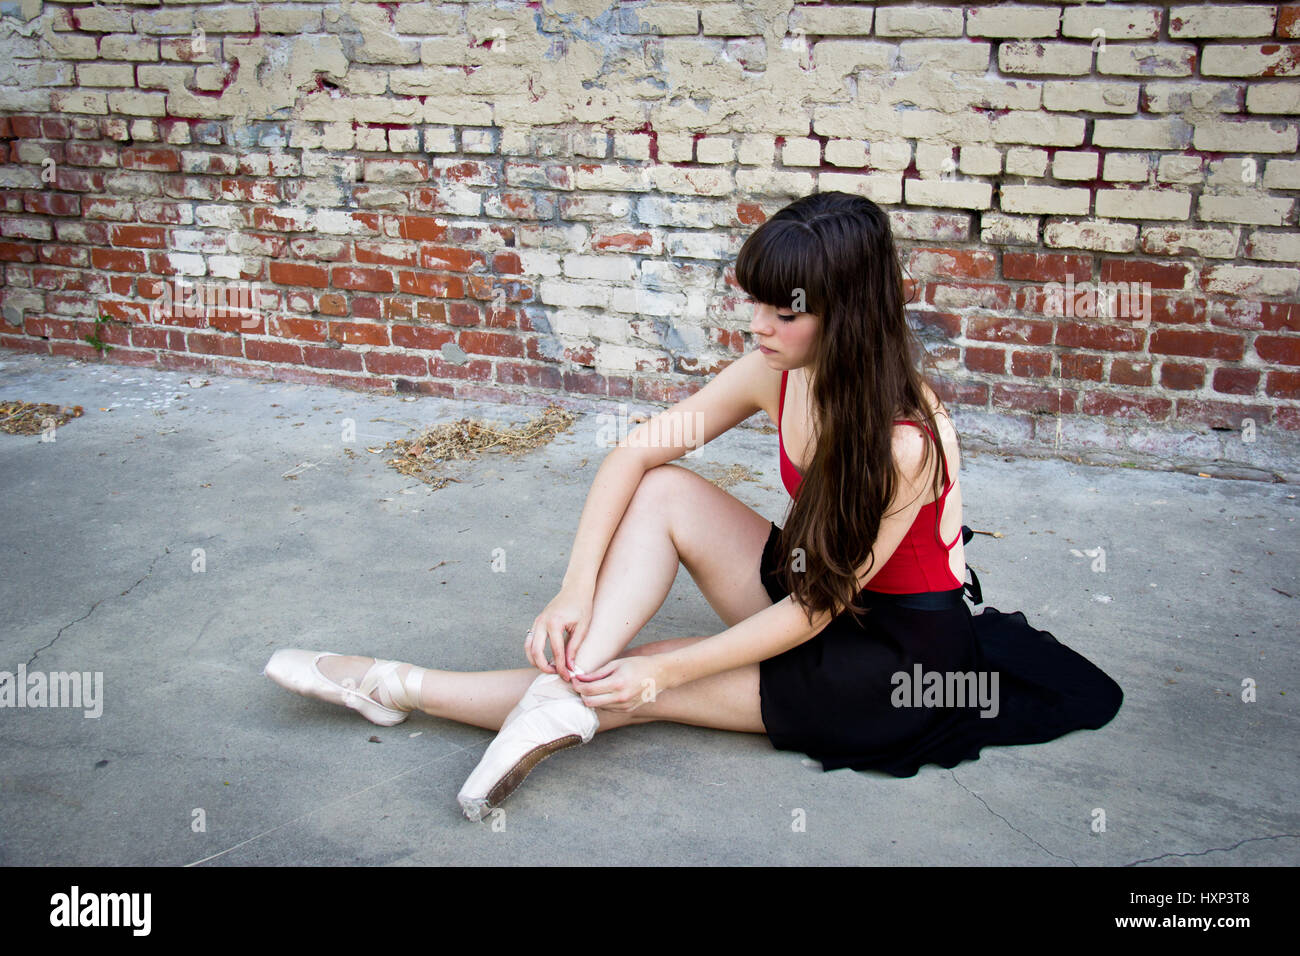 Bruna giovane ballerina seduta in un vicolo a mettere su il suo punto scarpe. Foto Stock